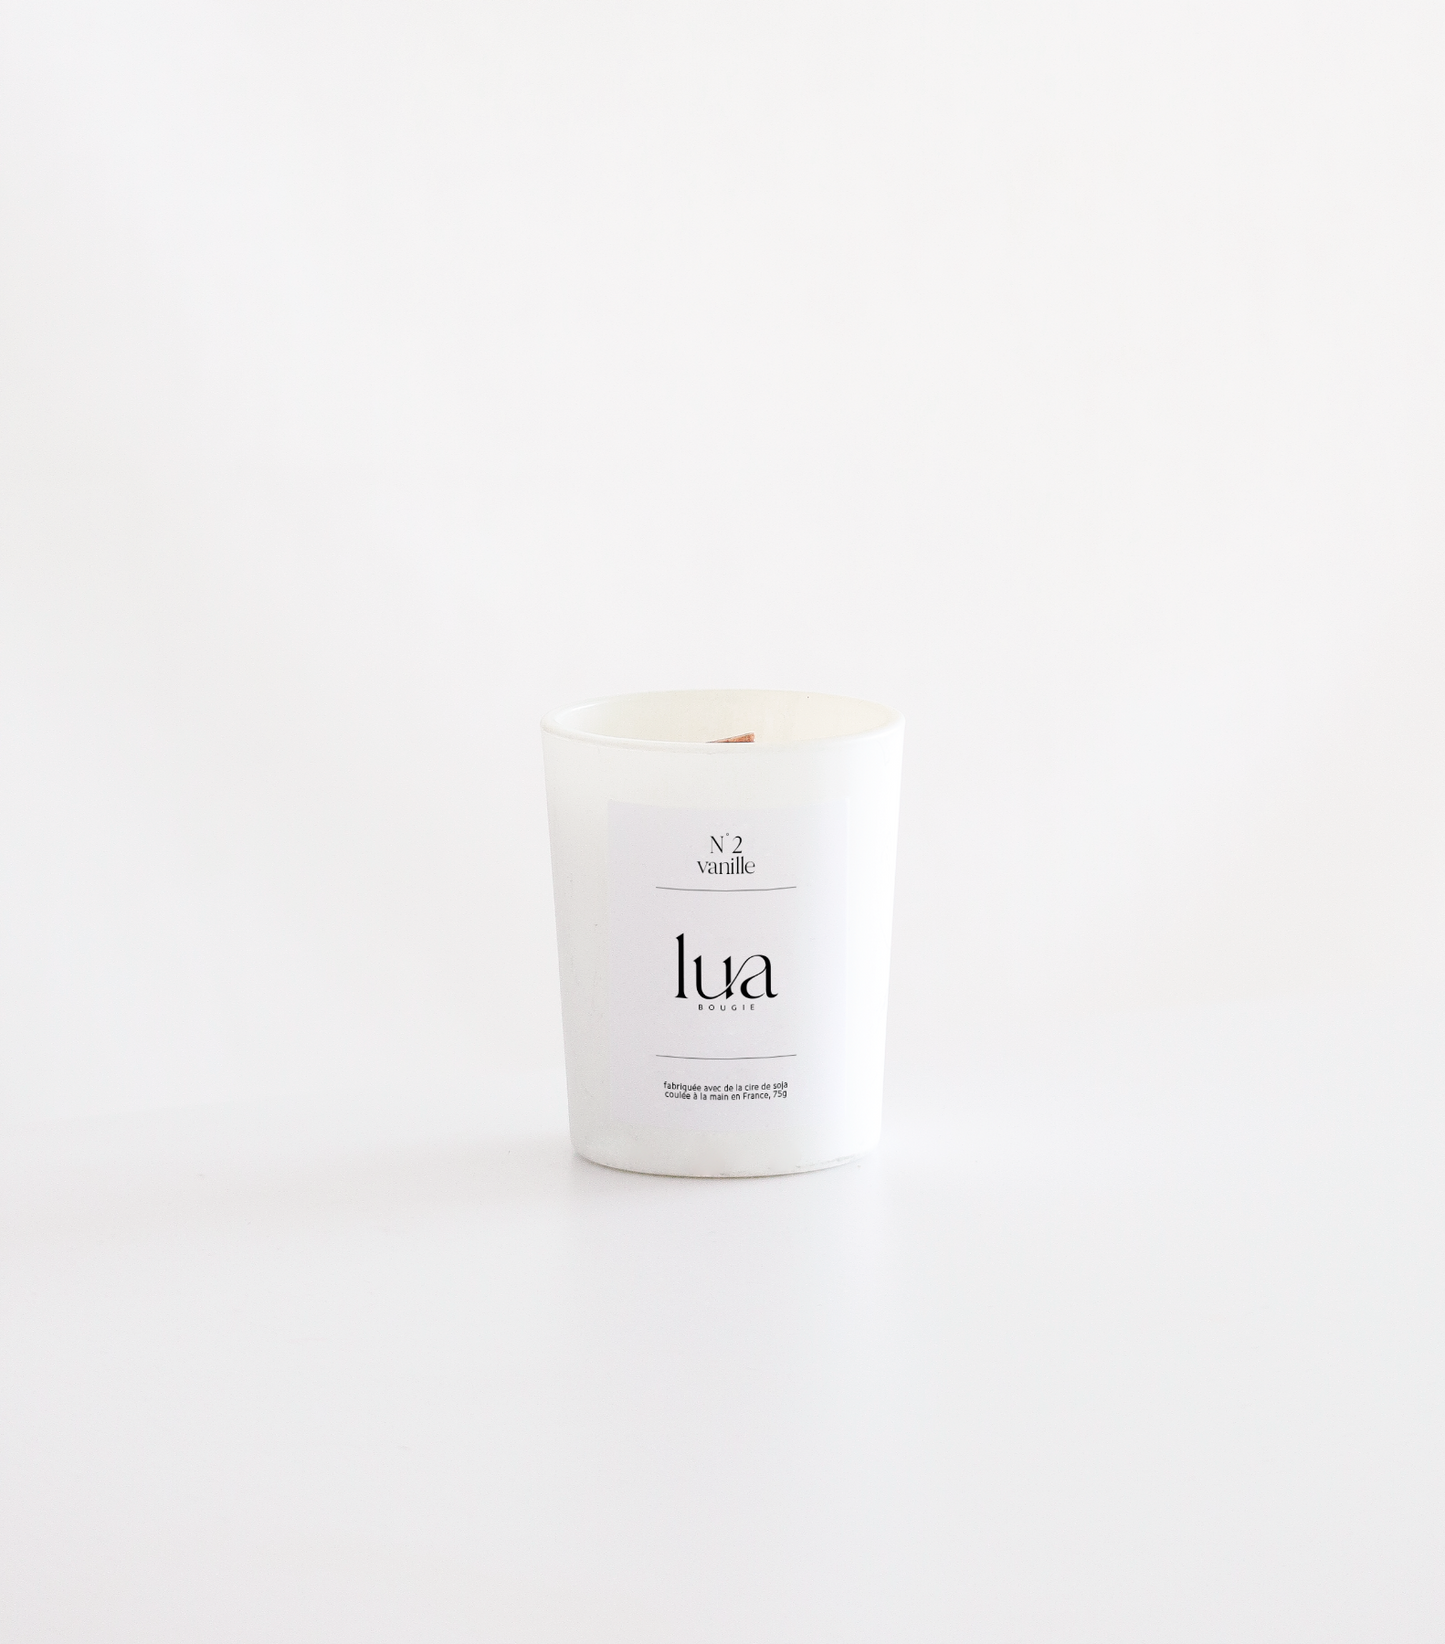 Bougie Lua parfumée et rechargeables, parfum vanille, contenant blanc, 75g. 